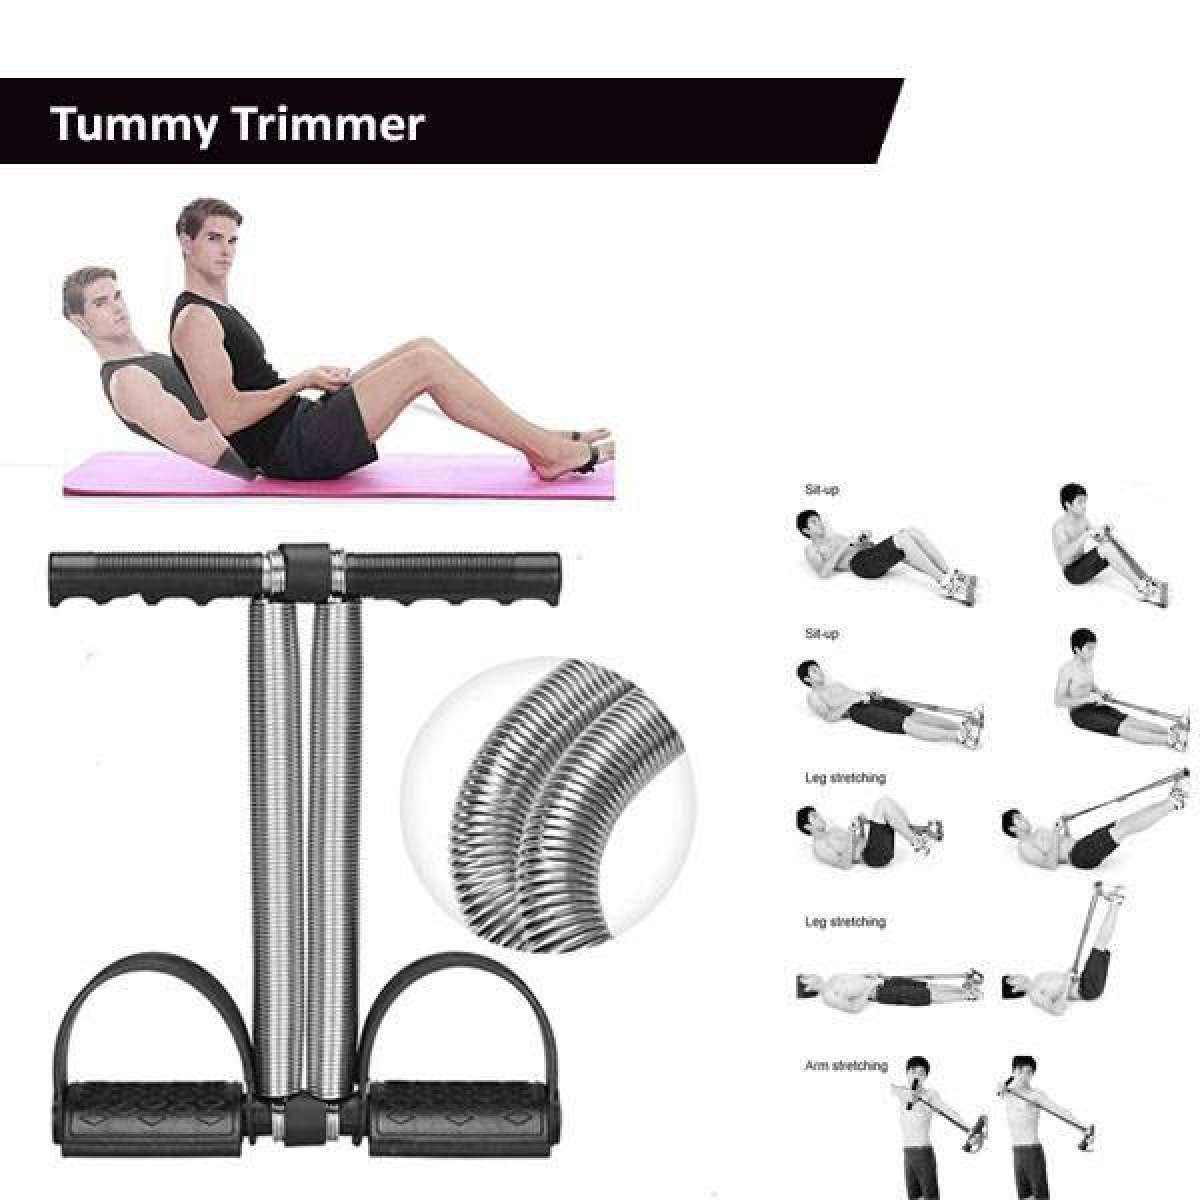 Tummy Trimmer Multifunktionale Bauchtrainer/Körpertrainer Pedal Bodybuilding 